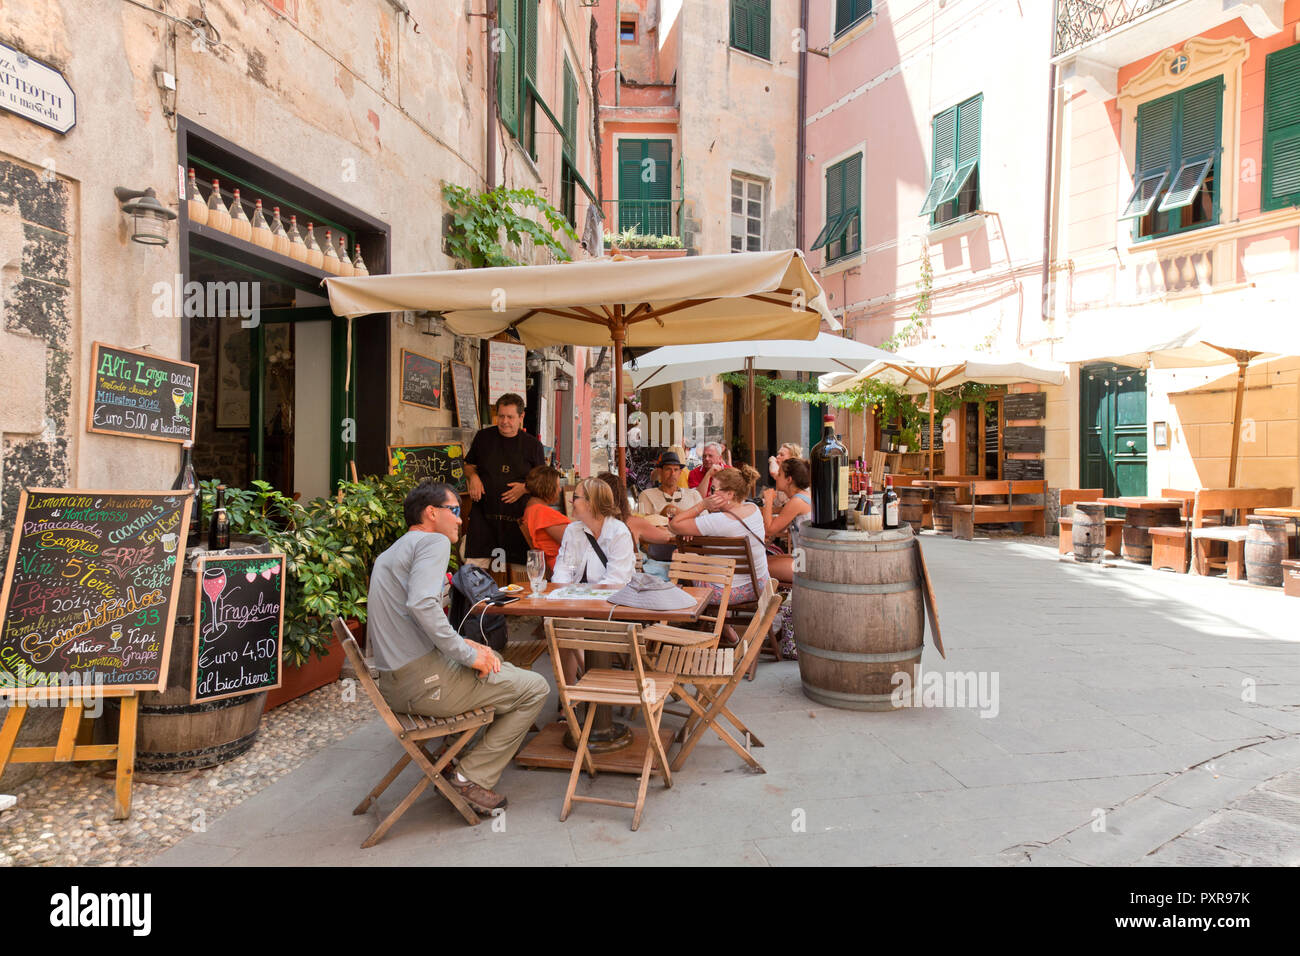 Menschen entspannen an einem bürgersteig Trattoria in Monterosso al Mare, eine Gemeinde in der Provinz von La Spezia, Teil der Region Ligurien. Es ist auf Stockfoto